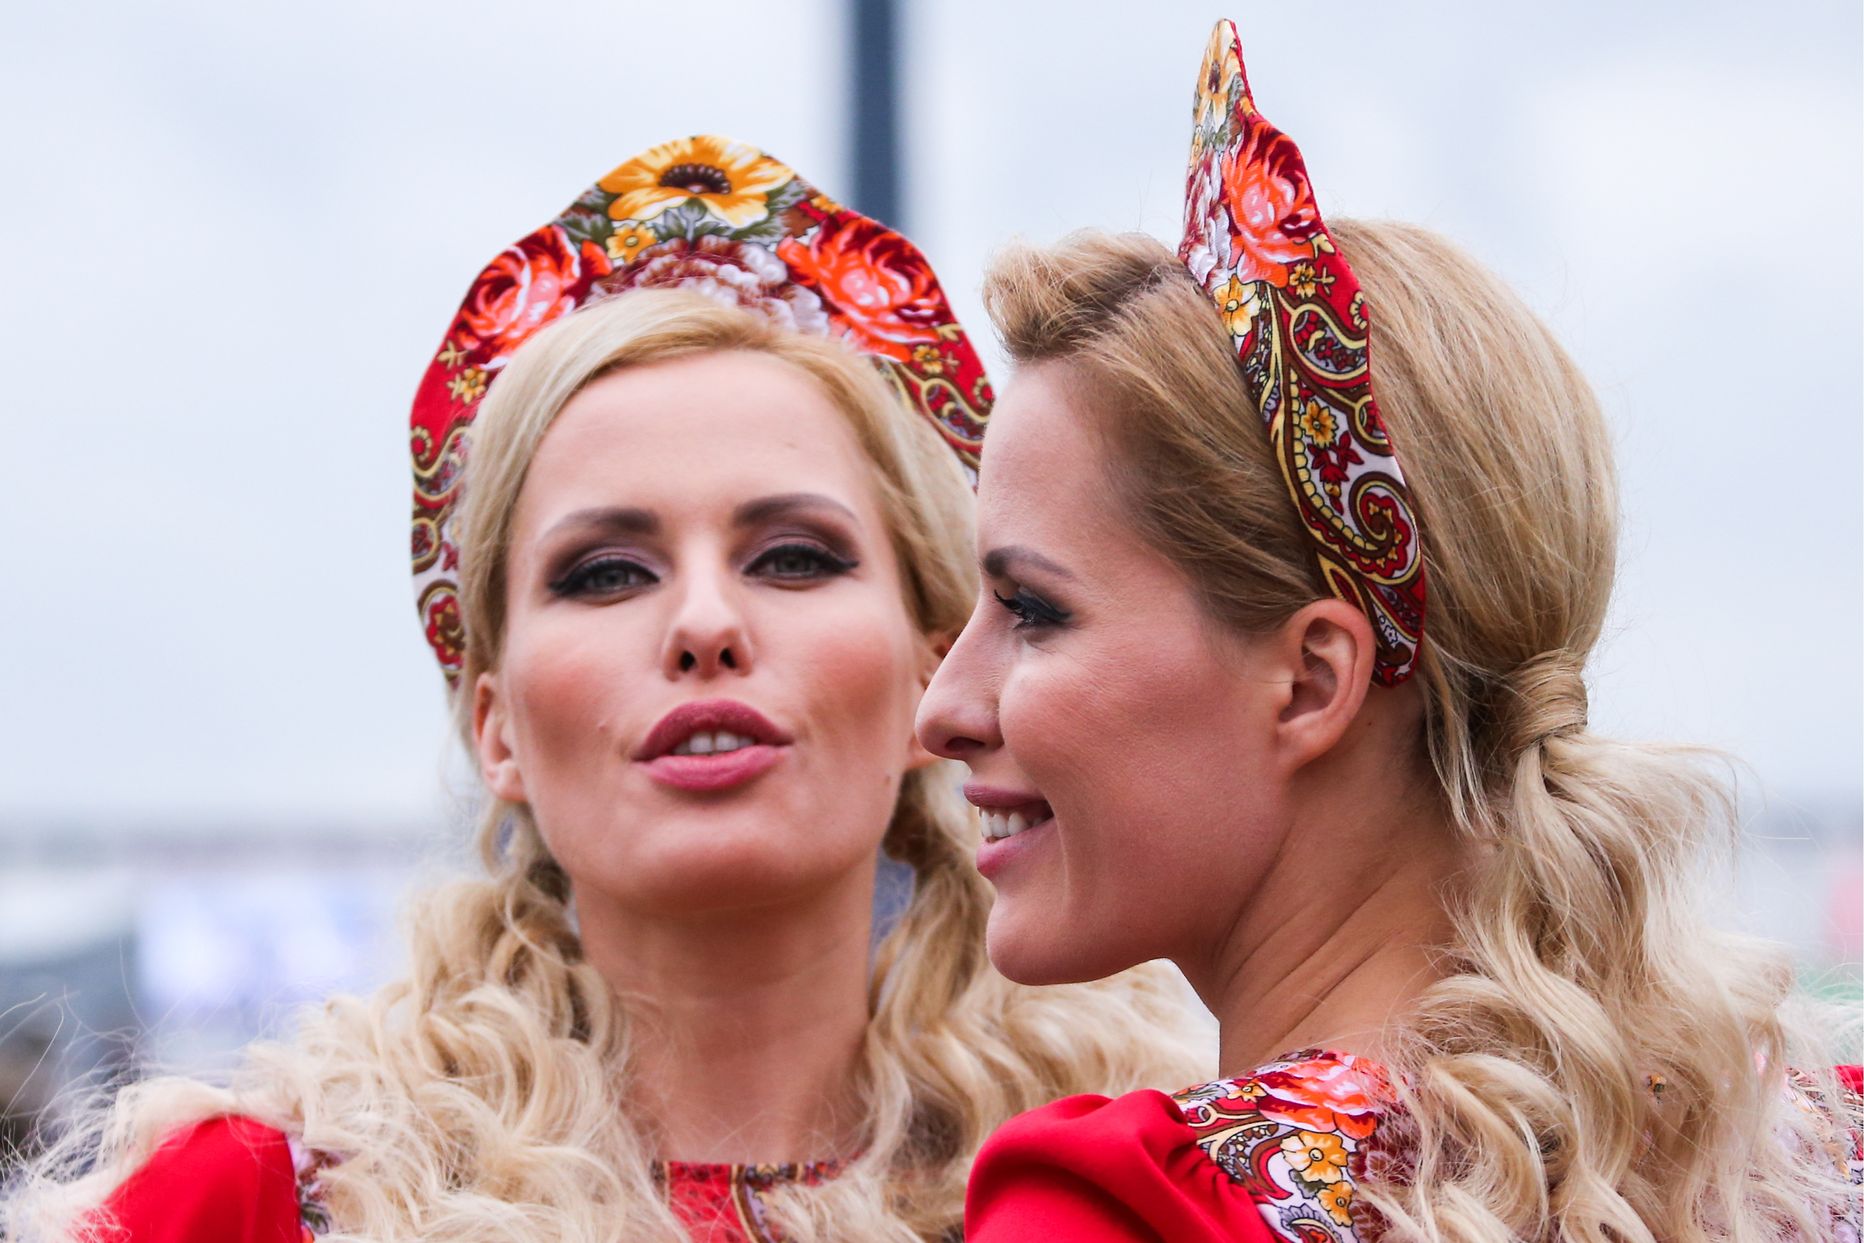 Pilt on illustreeriv: vene naised  SamovarFest festivalil 2018.